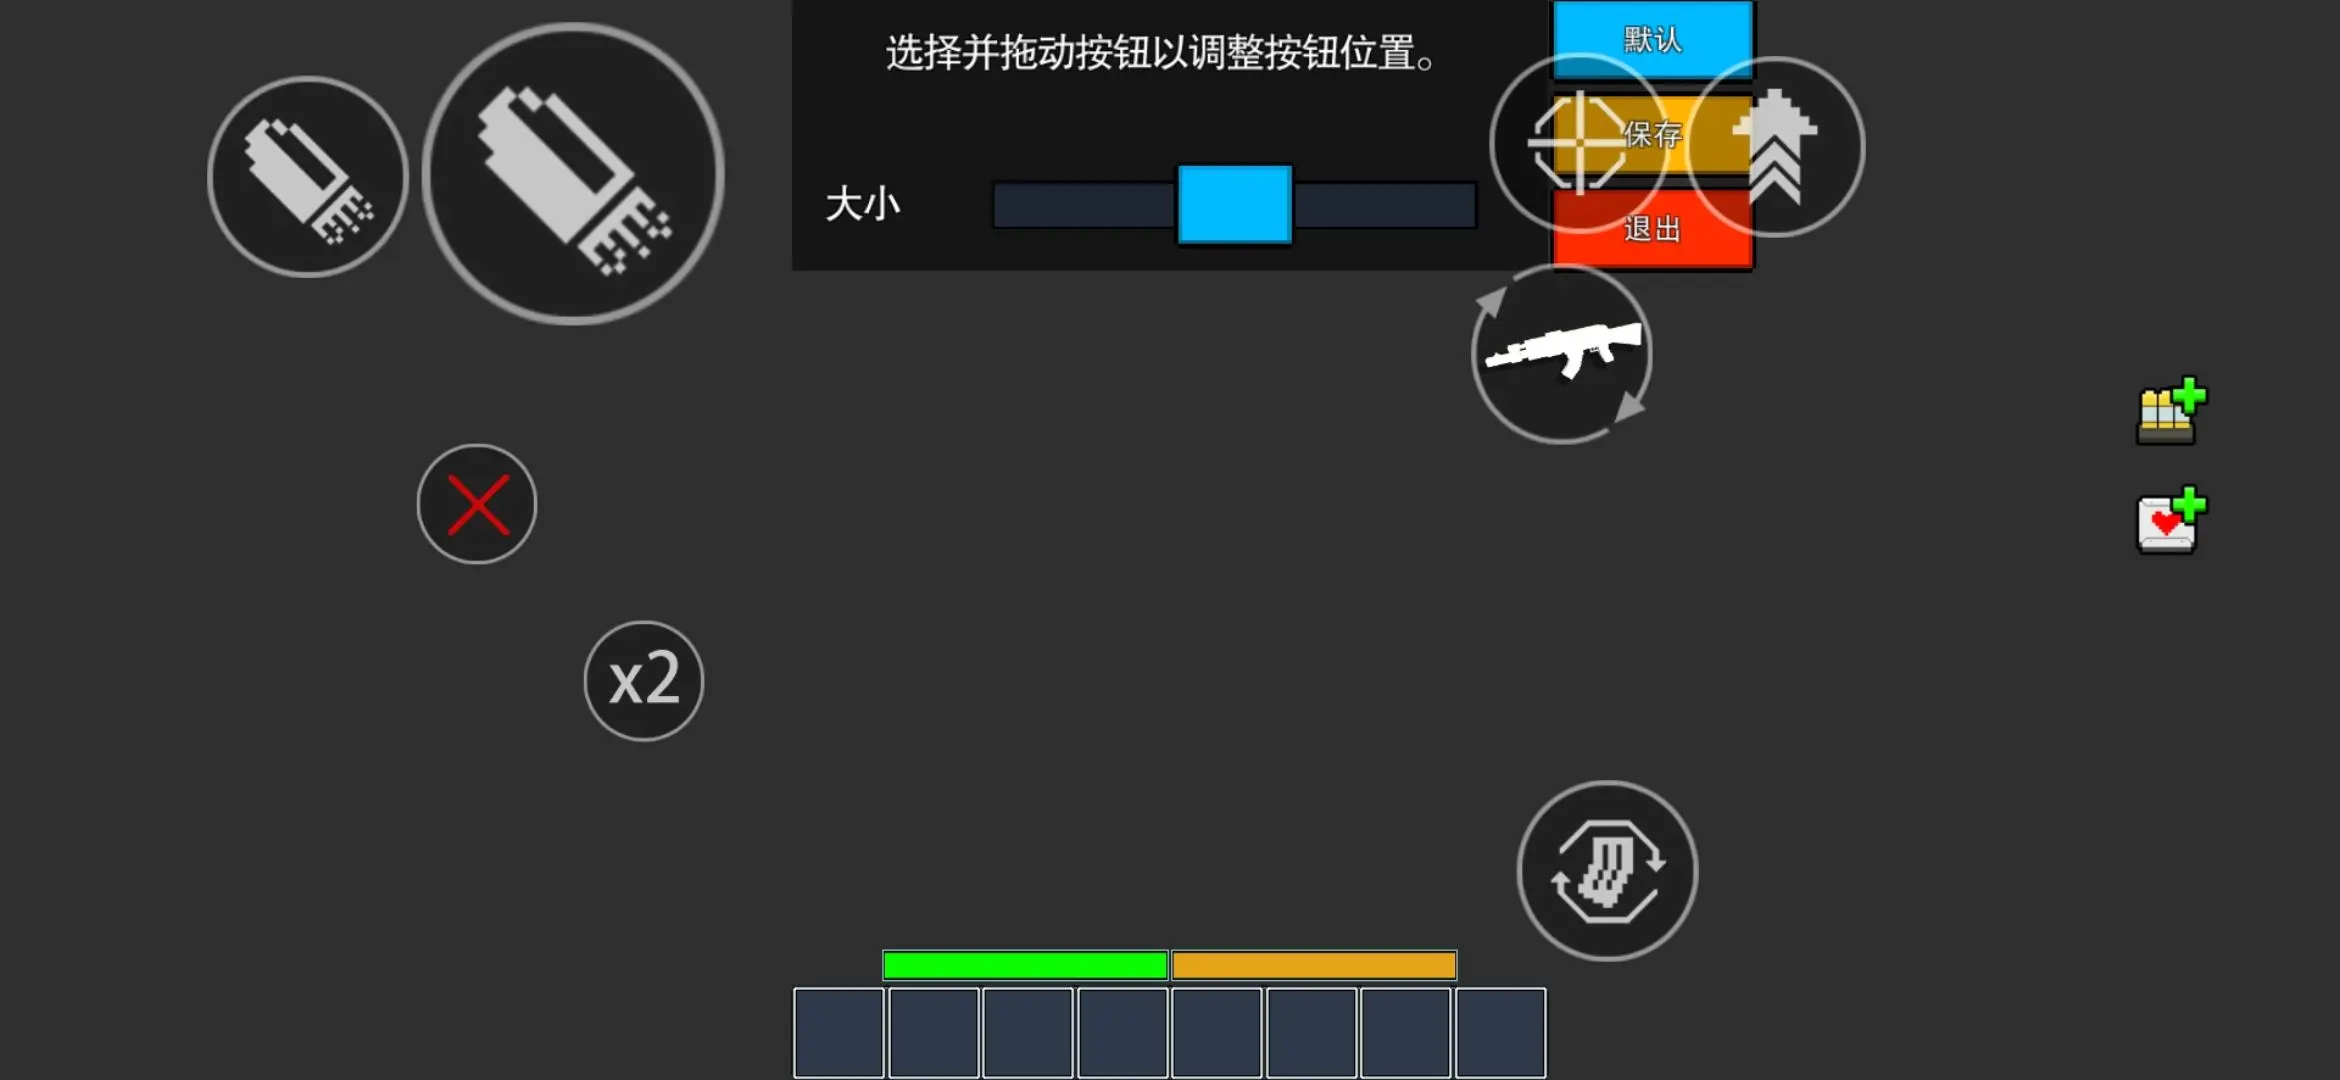 手机射击游戏三指布局图_射击位置_射击步骤解析图